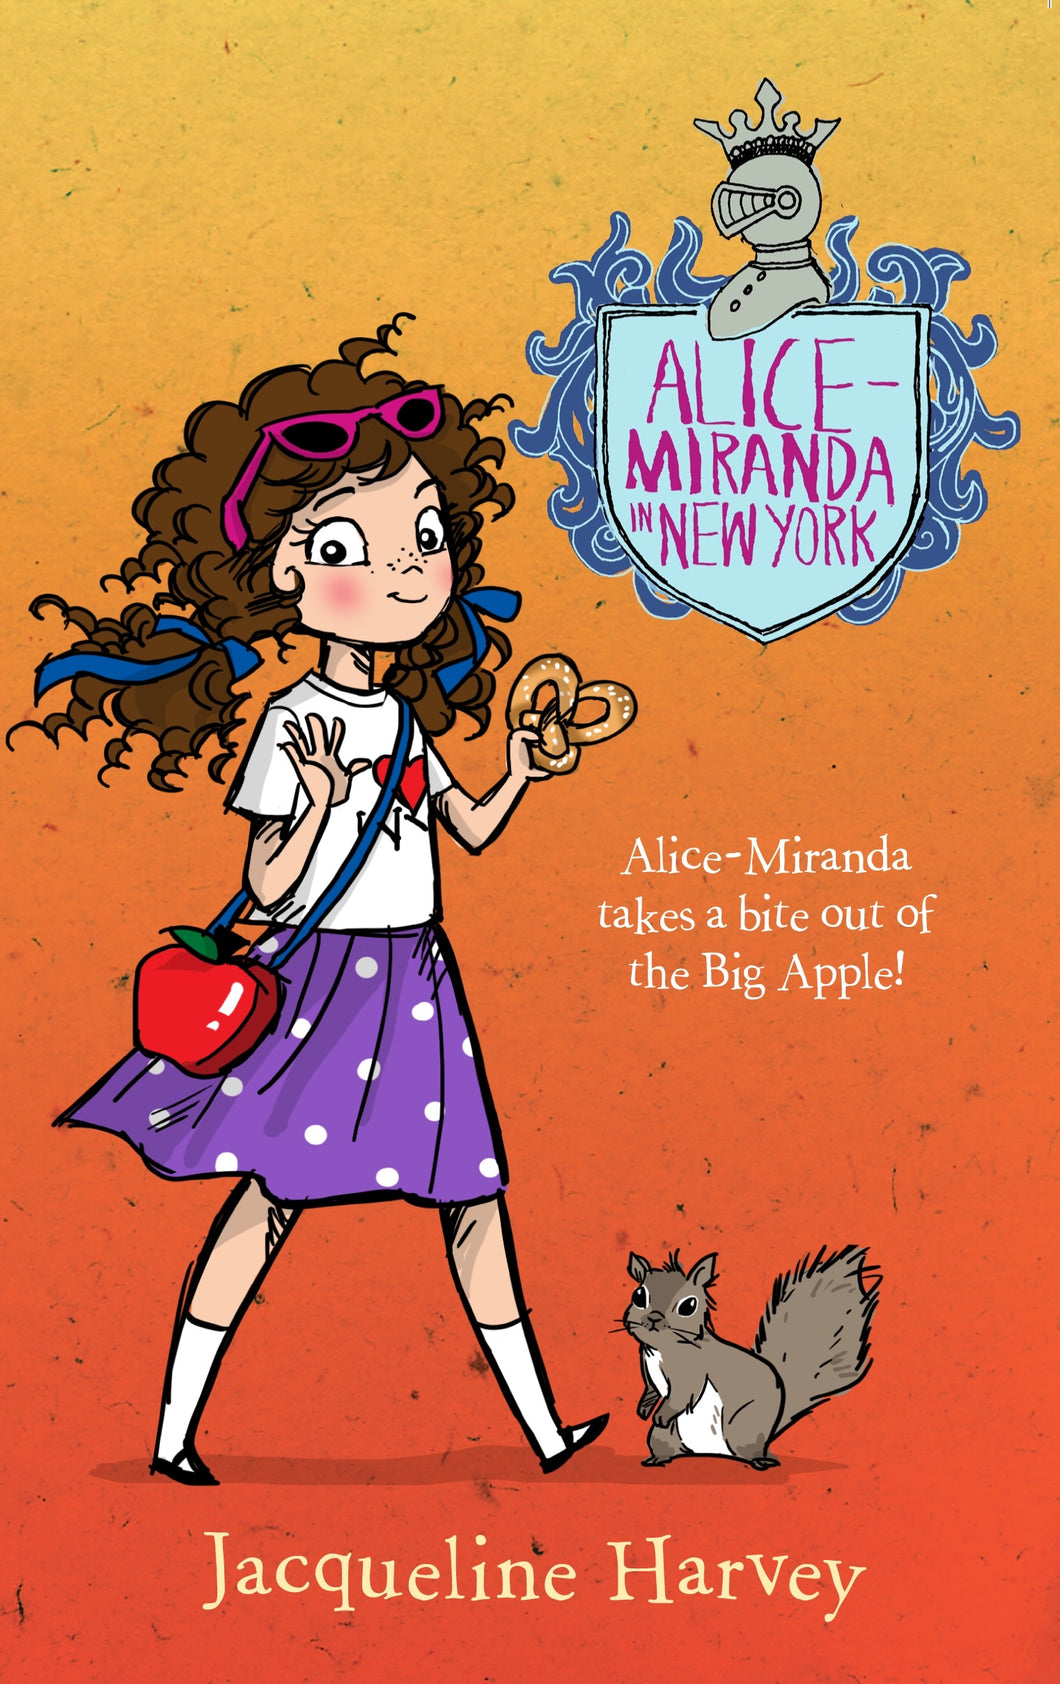 Alice-Miranda in New York (Book #5) by Jacqueline Harvey